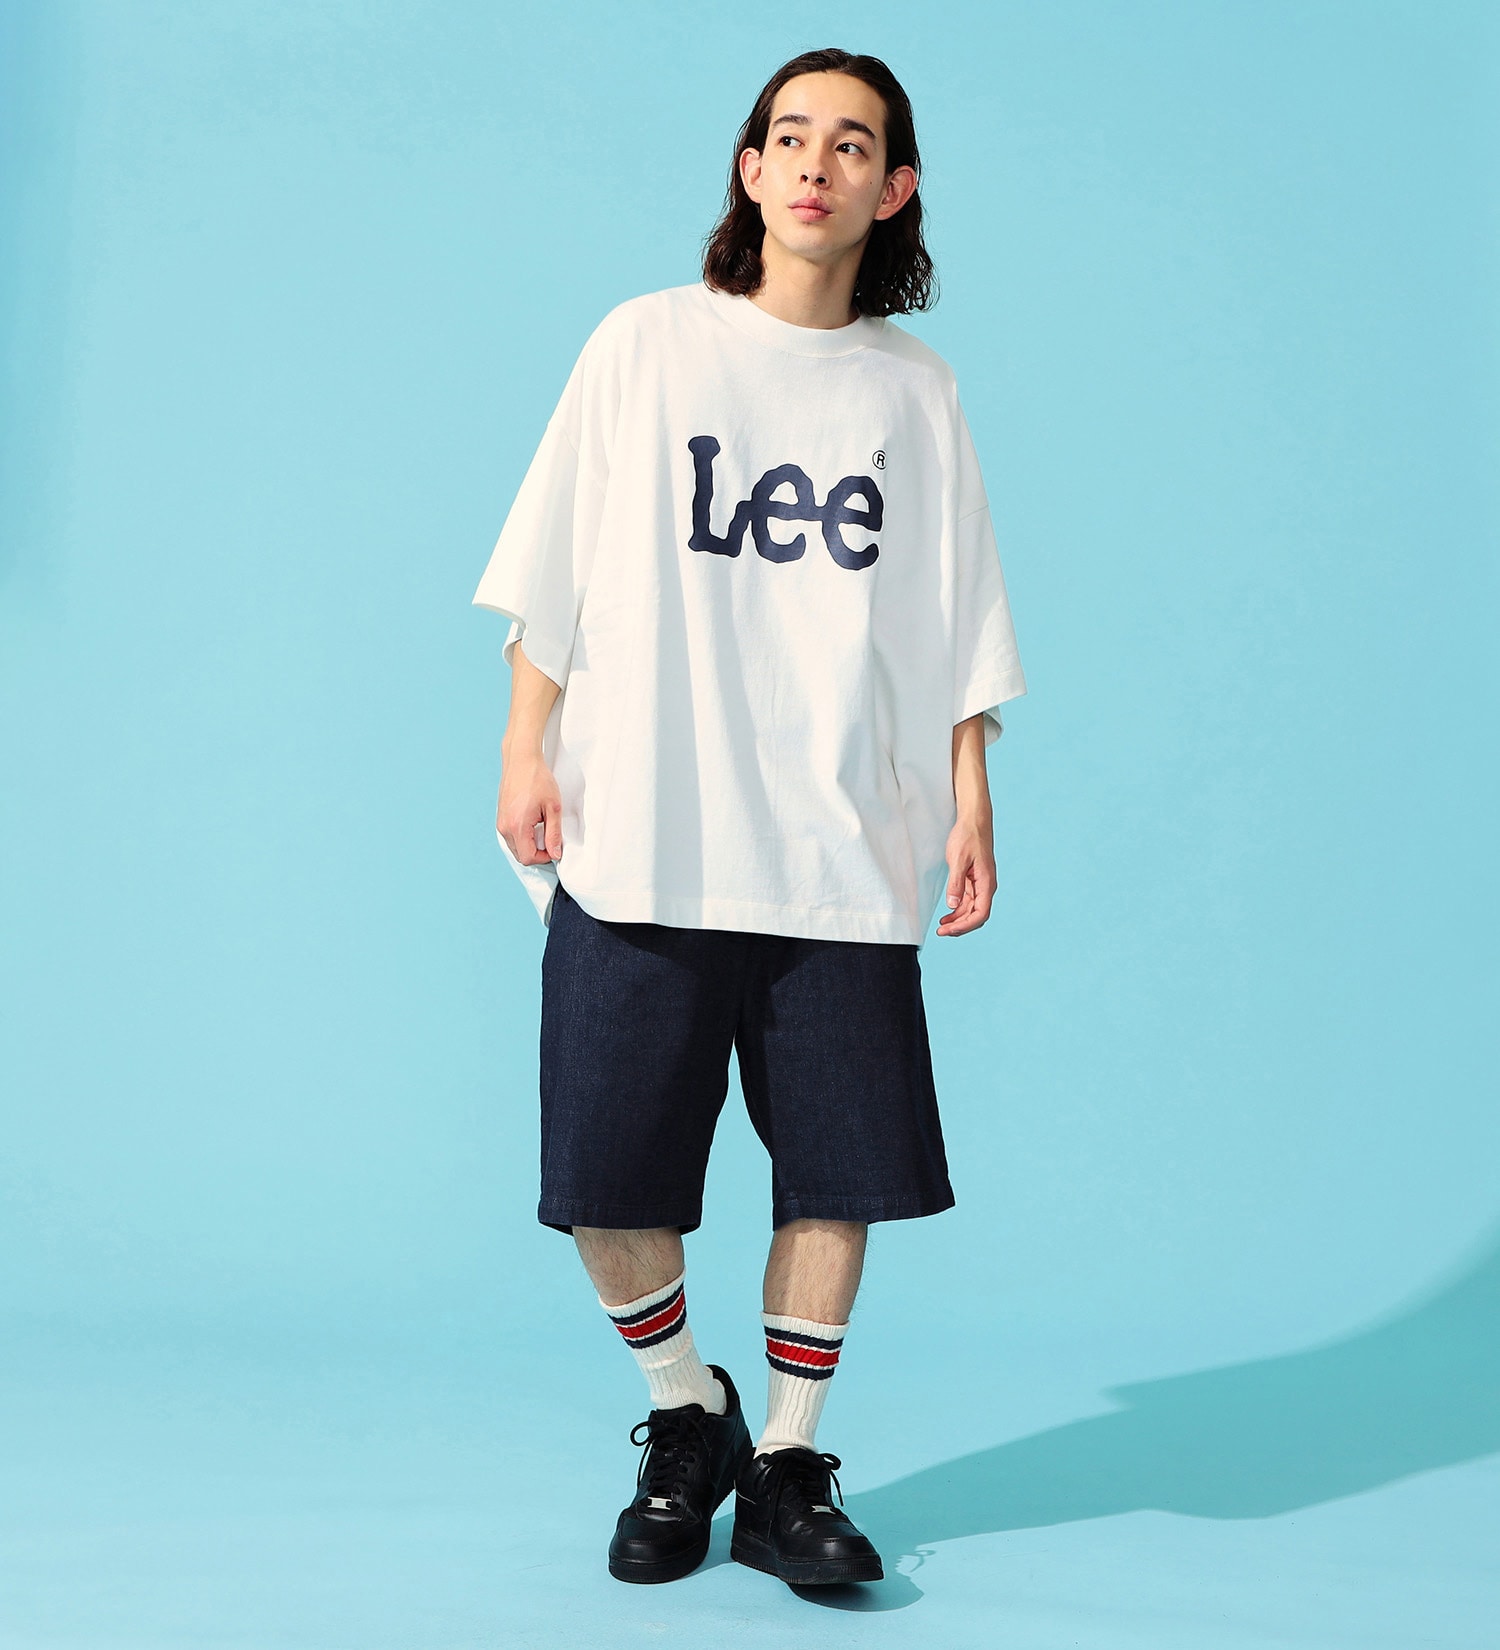 Lee(リー)の【すっきり】FLeeasy SHORTS/ イージーショートパンツ|パンツ/デニムパンツ/メンズ|インディゴブルー